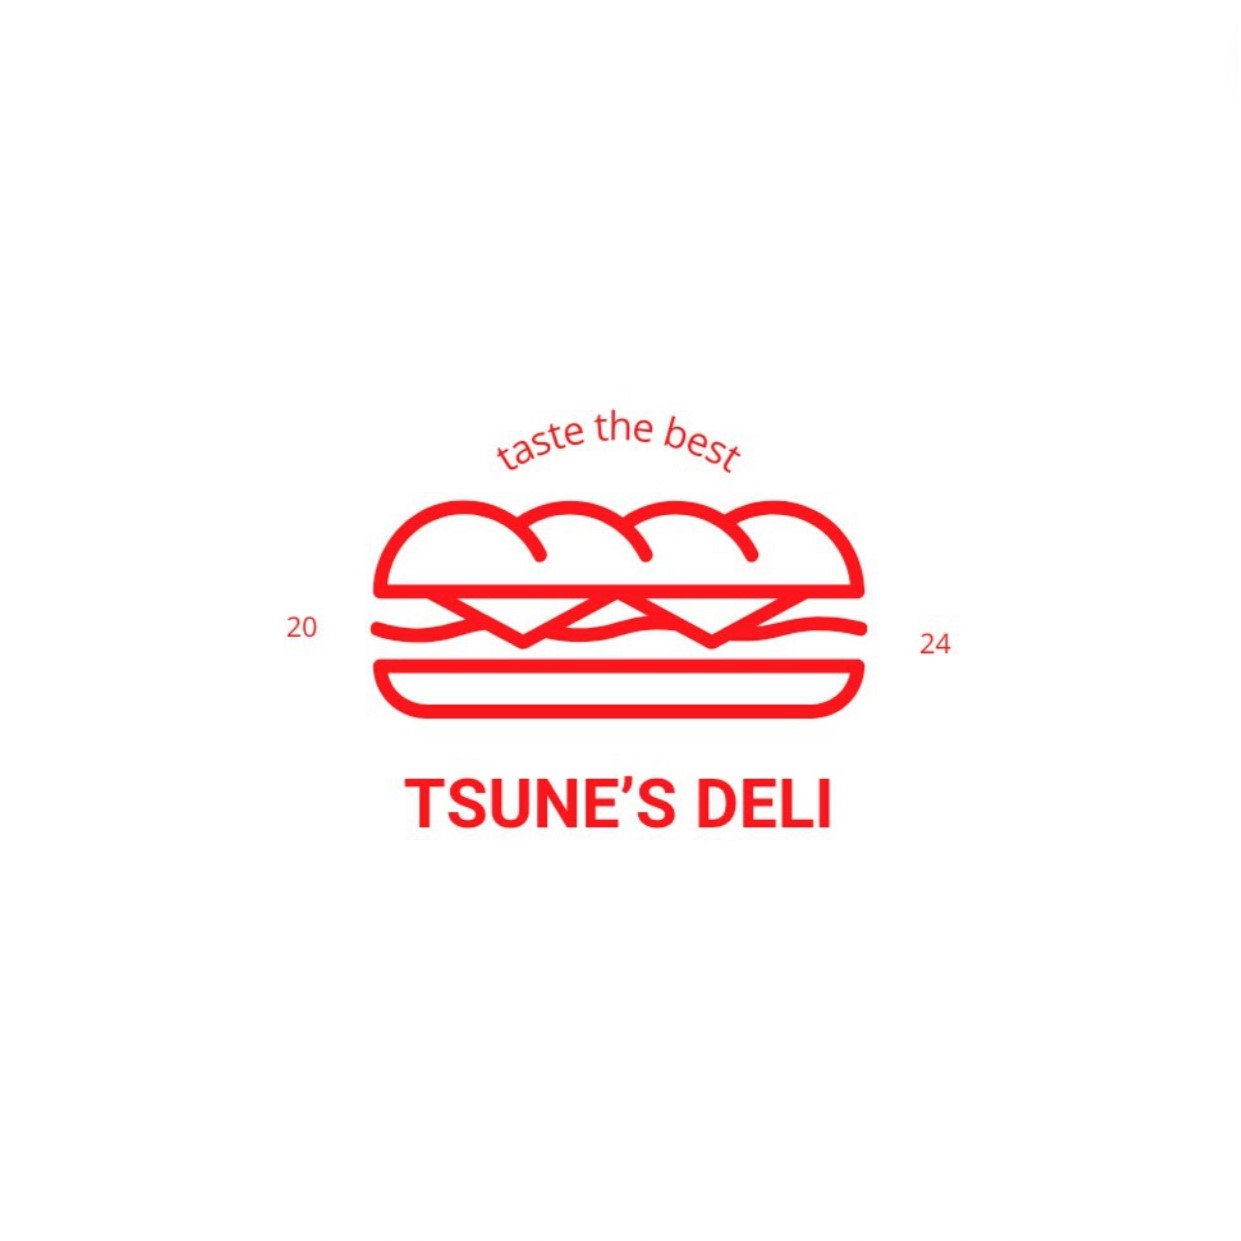 Tsune's deli Sandwich